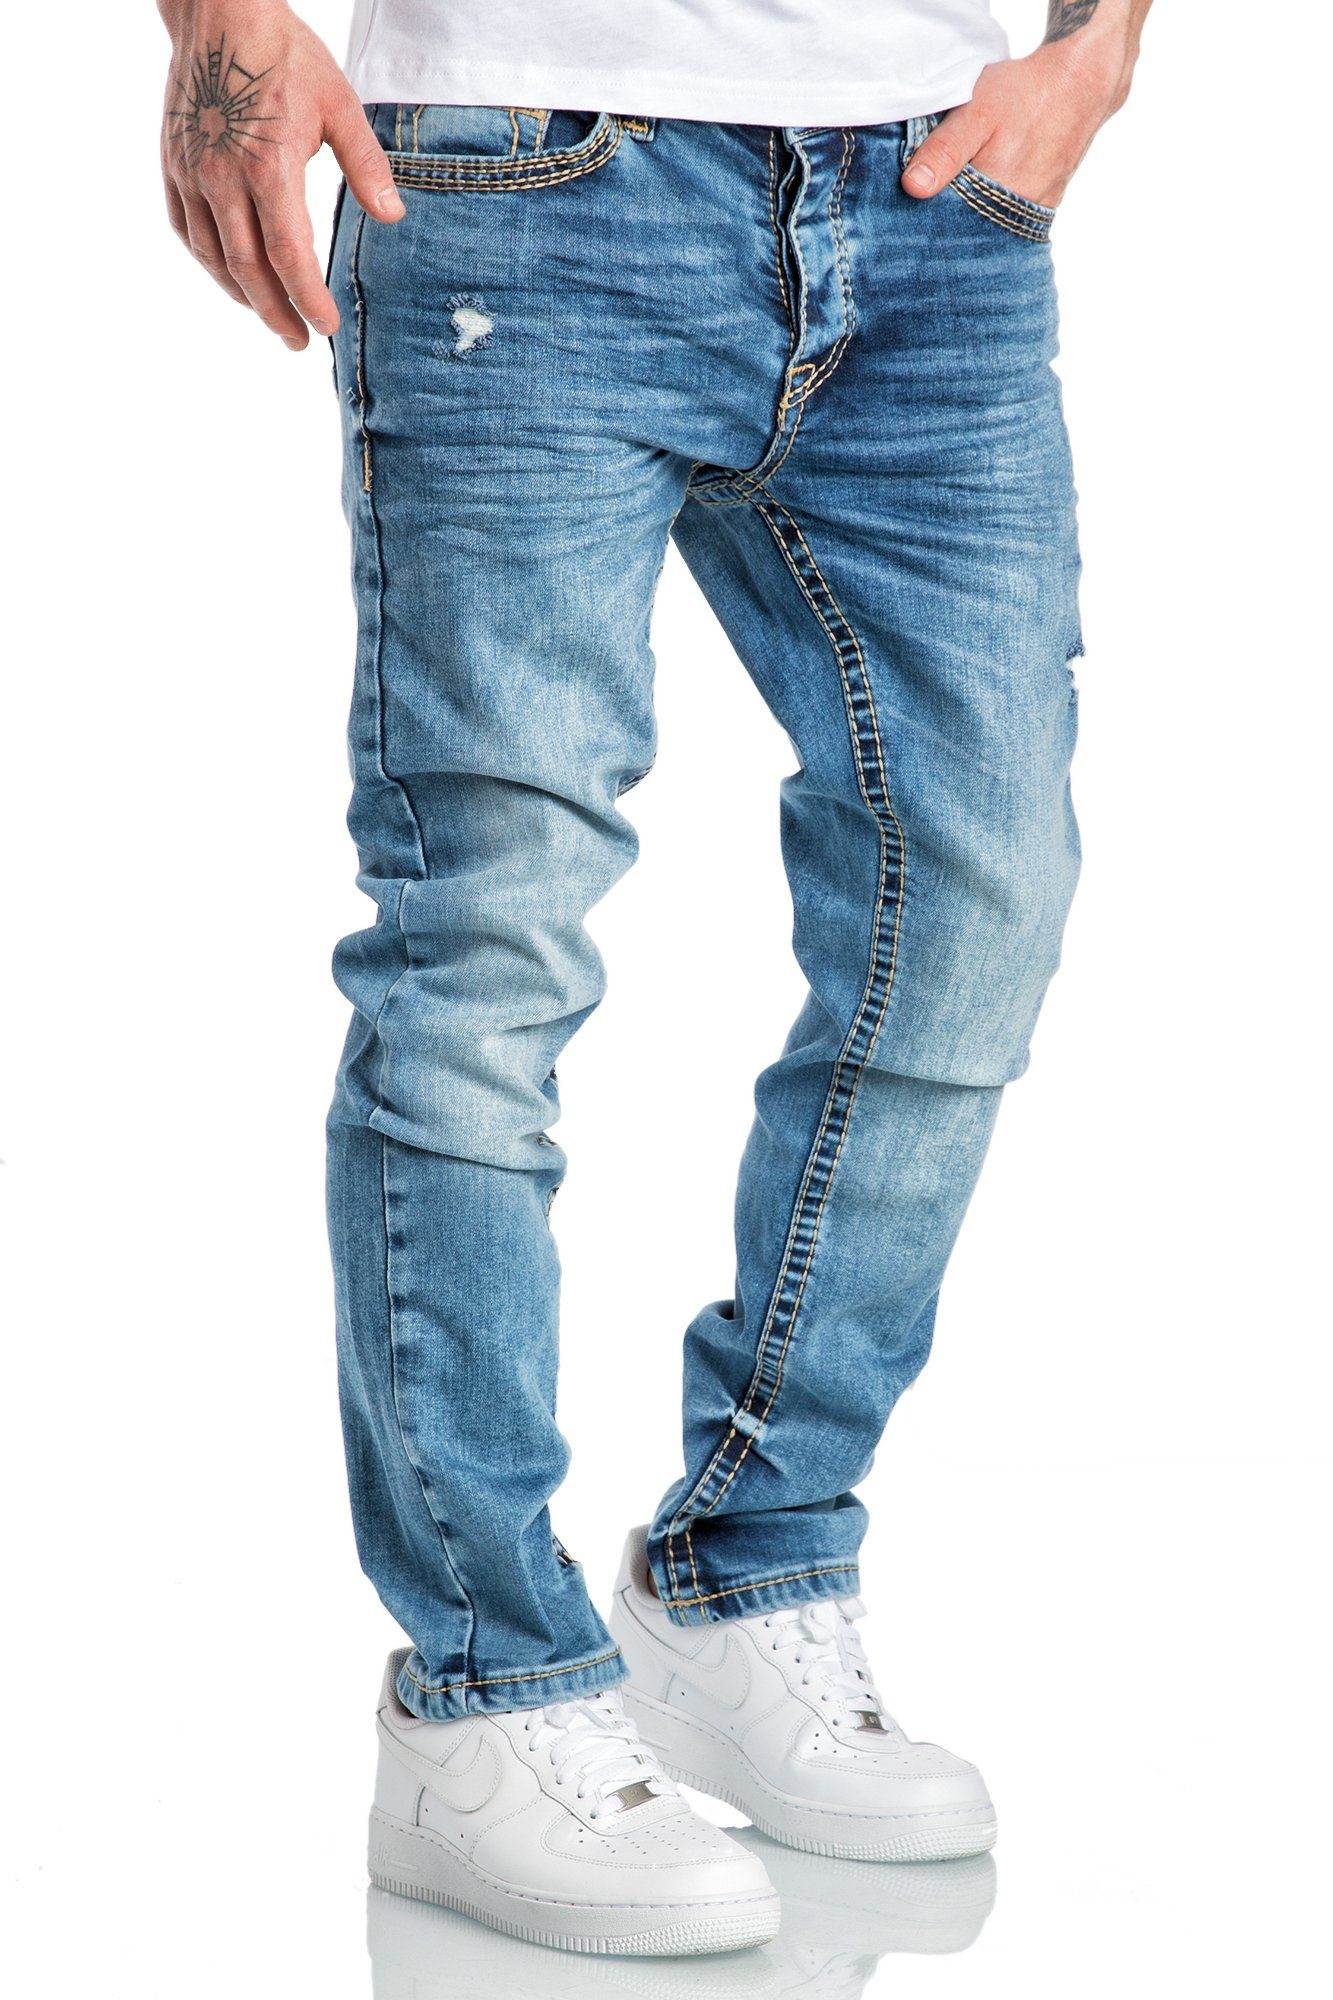 Amaci&Sons Stretch-Jeans ANCHORAGE Jeans Fit Slim Regular Hose Regular Slim Destroyed Dicke Herren Hellblau Nähte Denim Destroyed